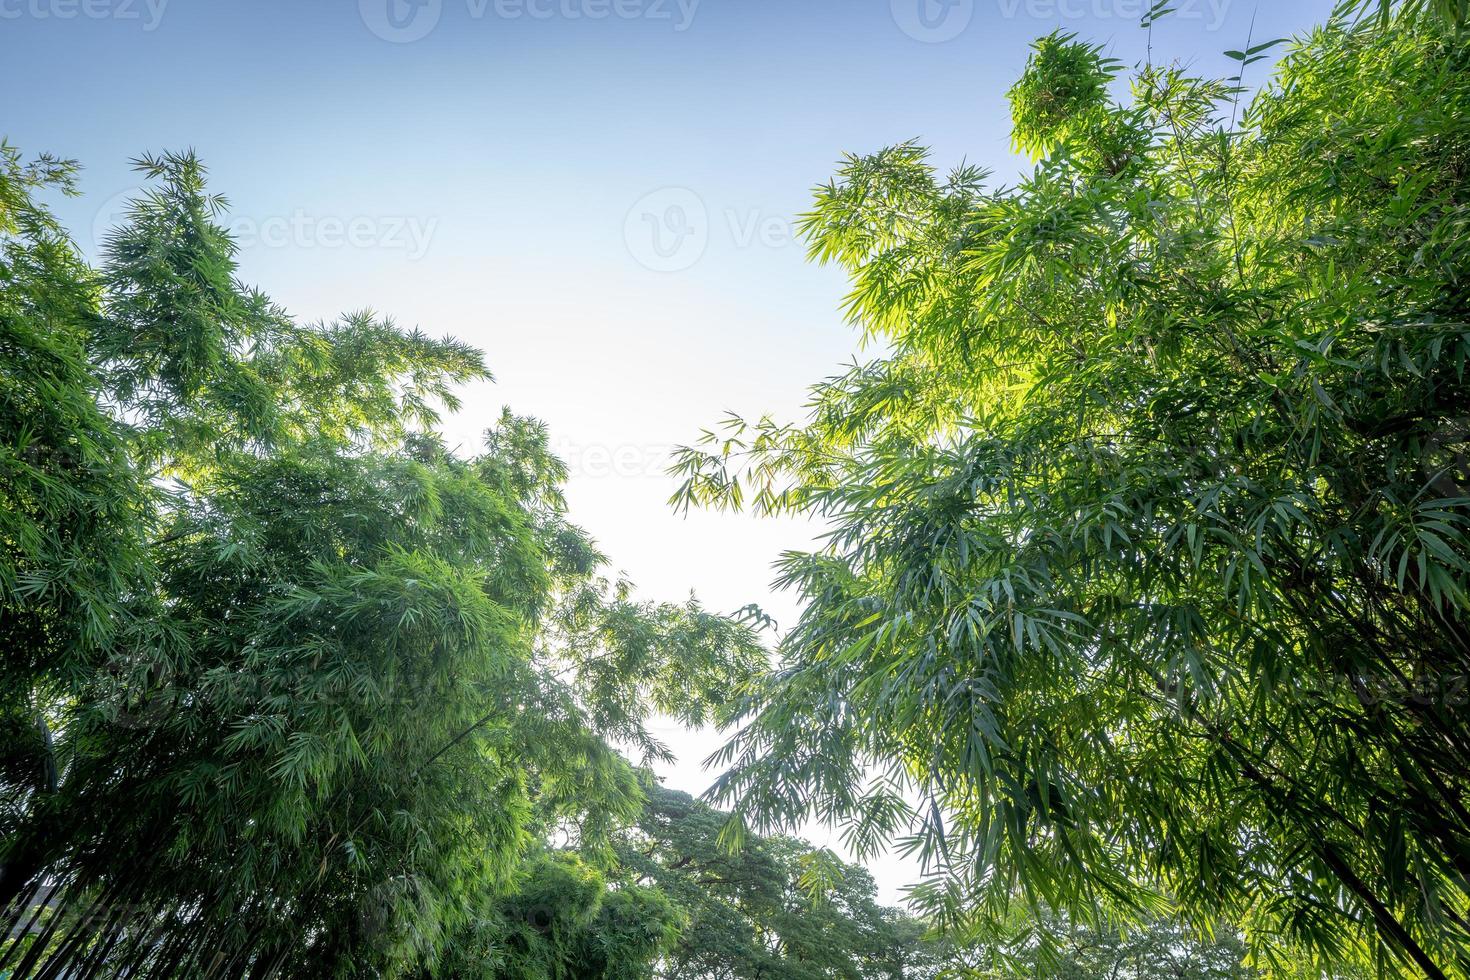 el árbol de bambú en el jardín del bosque con la luz del borde del cielo abierto, representa la naturaleza fresca y abundante en asia. foto